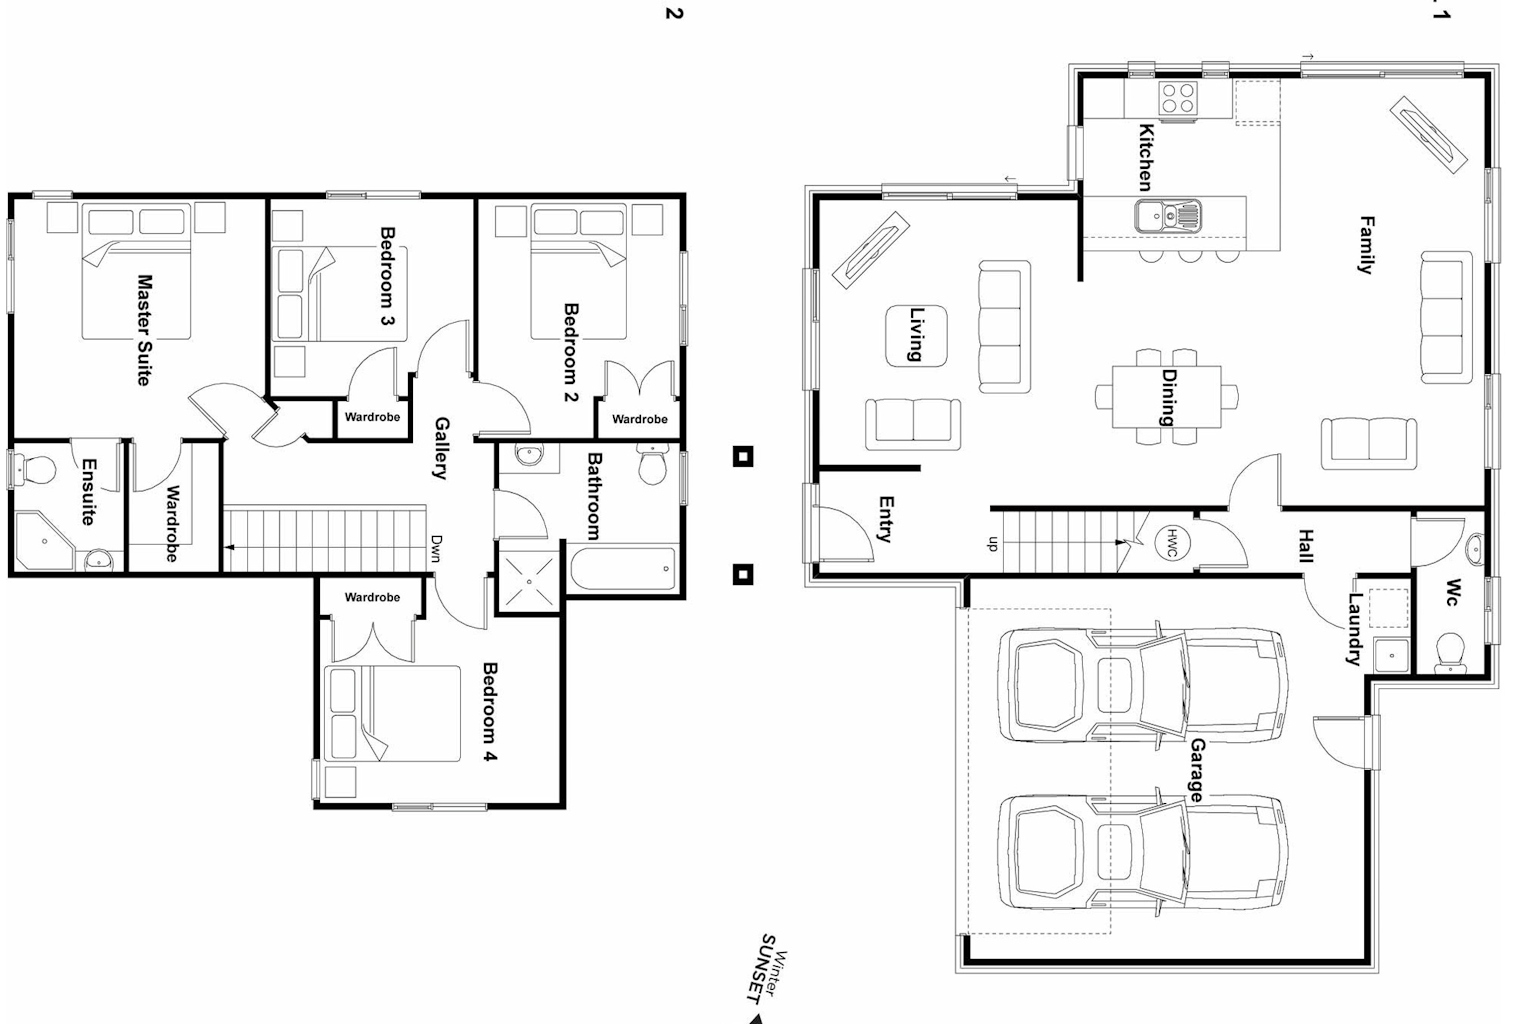 Fairview floor plan